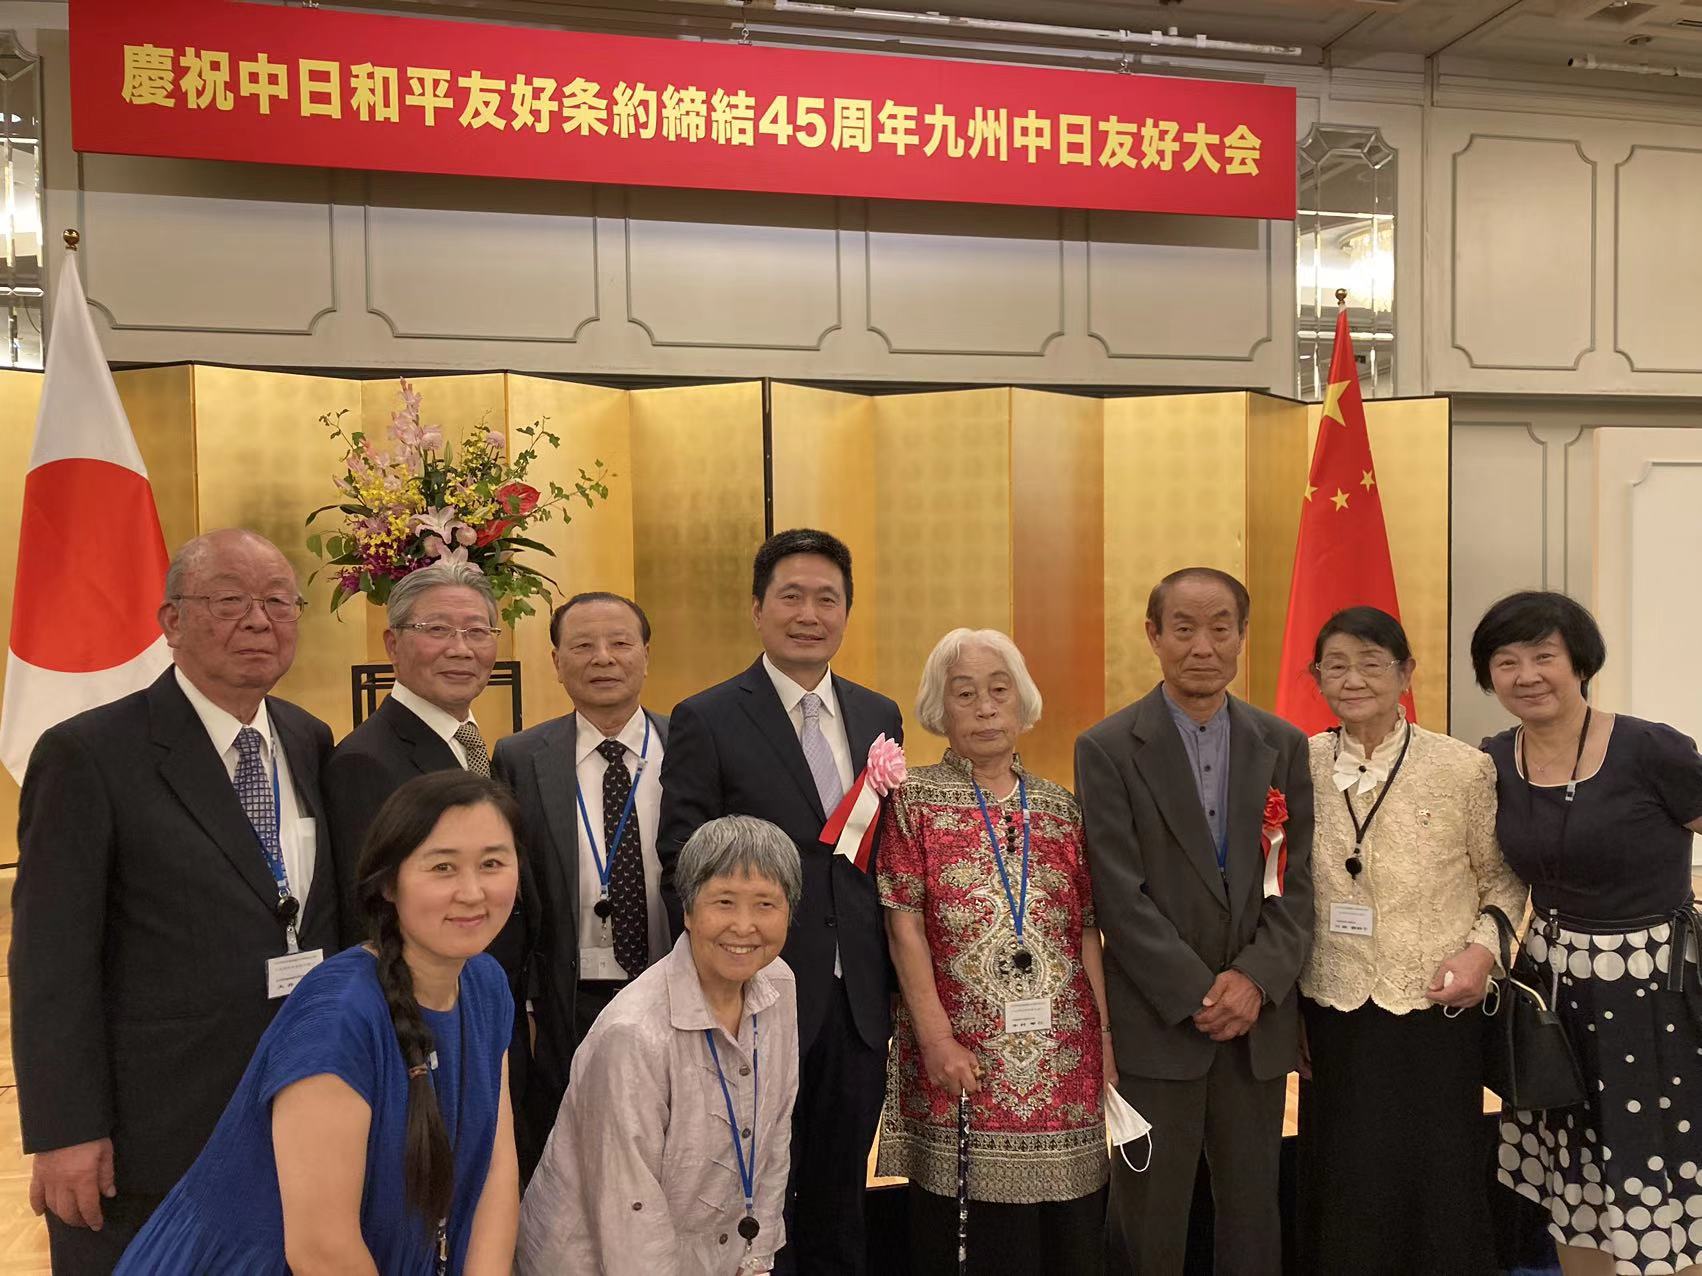 “中国归国者九州联合会”受邀出席“庆祝中日和平友好条约缔结45周年九州中